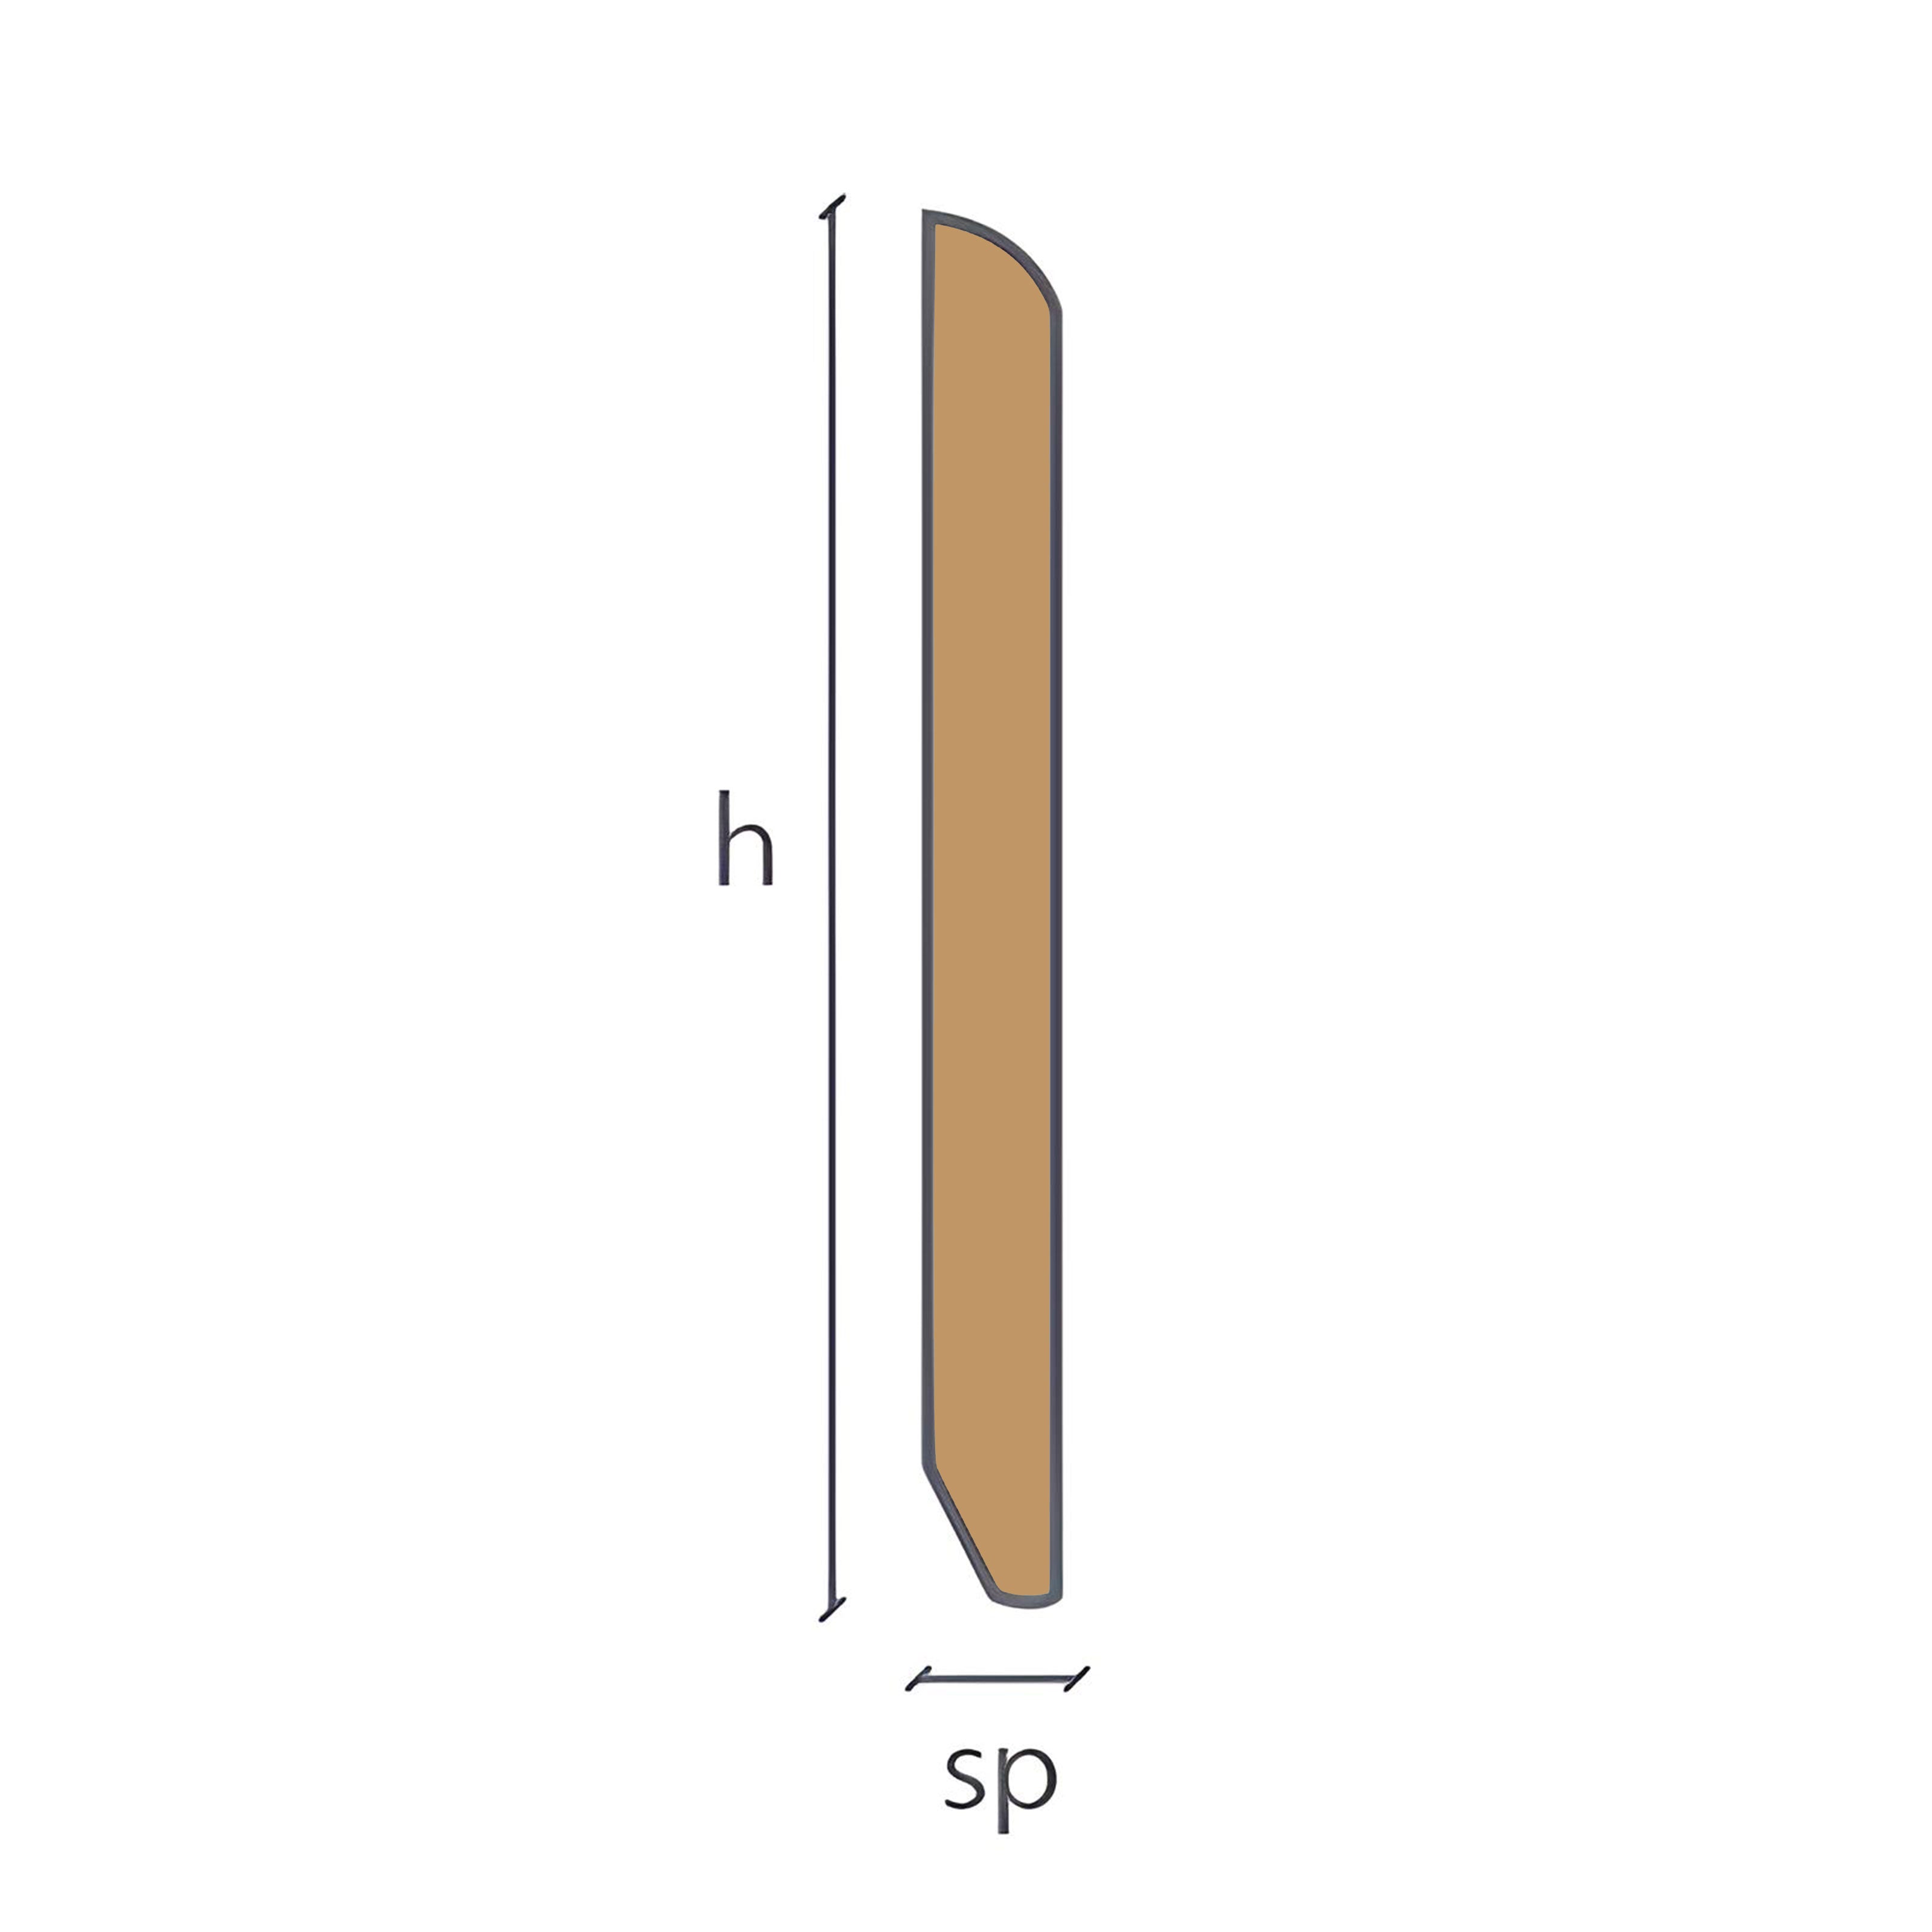 Battiscopa in legno impiallacciato 80X13mm finiture particolari (spazzolato, decapato, cera ecc.) - Eternal Parquet